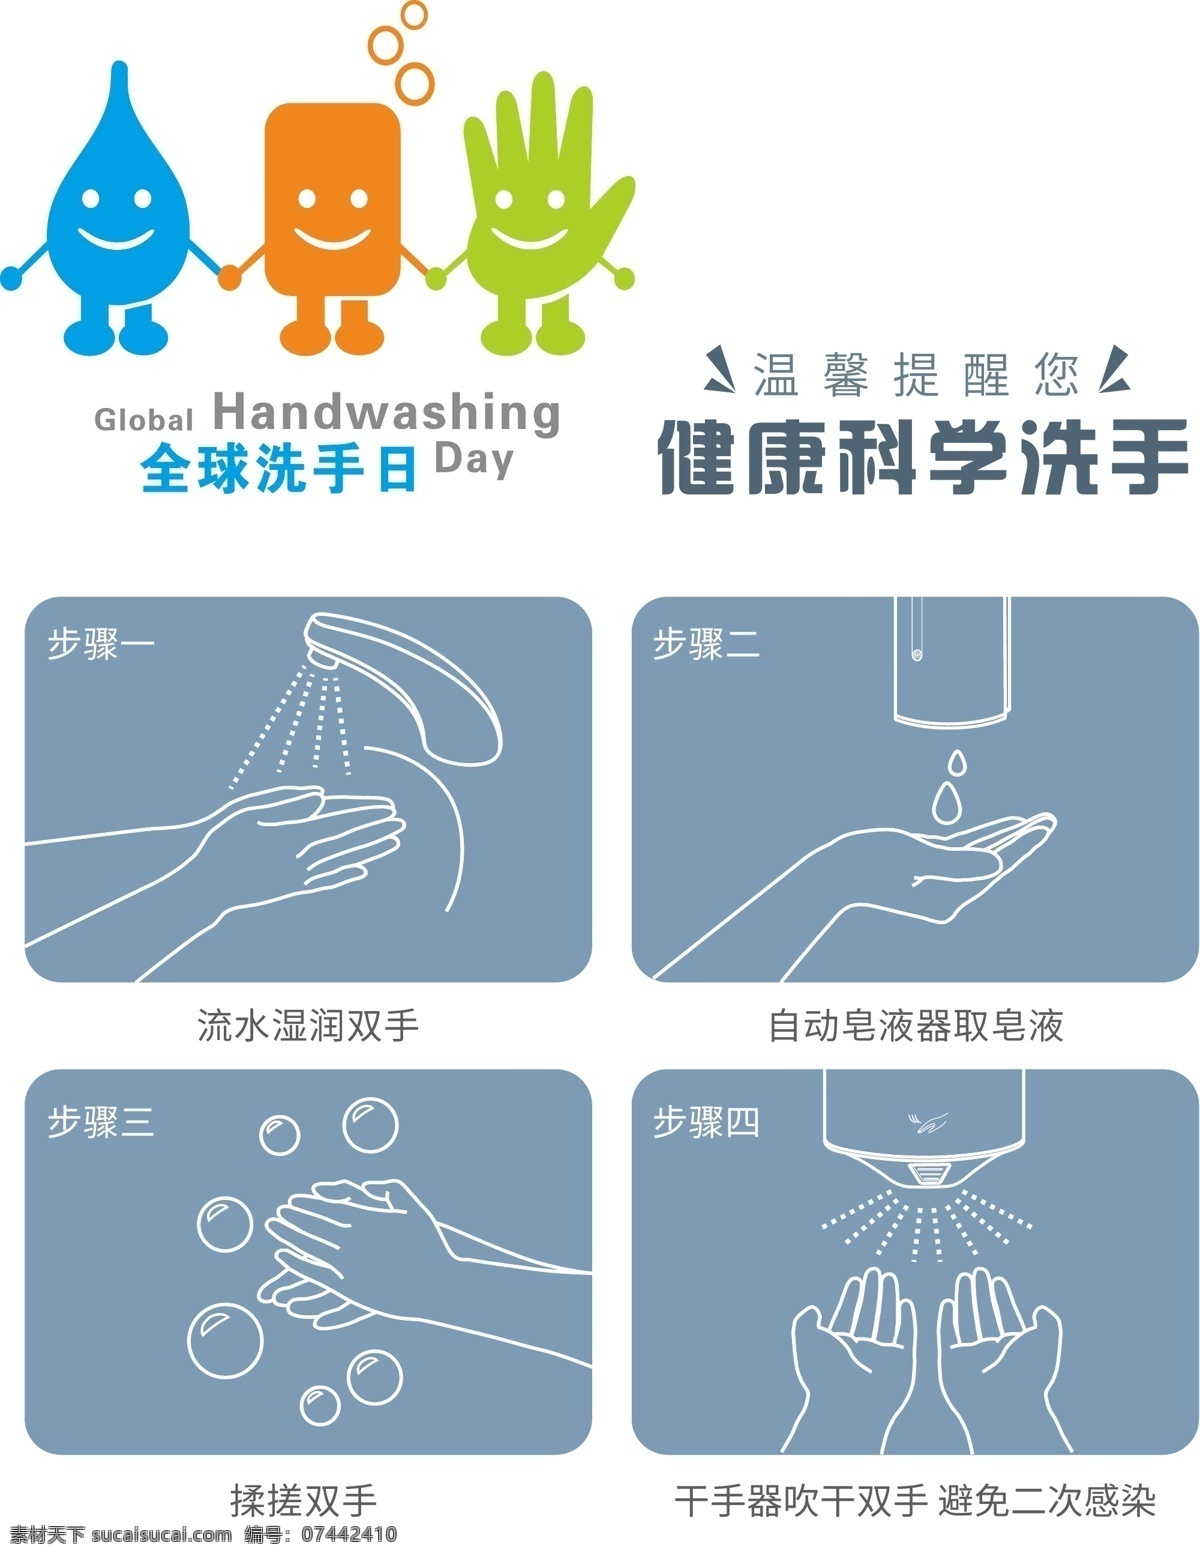 全球 洗手 日 健康 科学 全球洗手日 洗手日 健康科学洗手